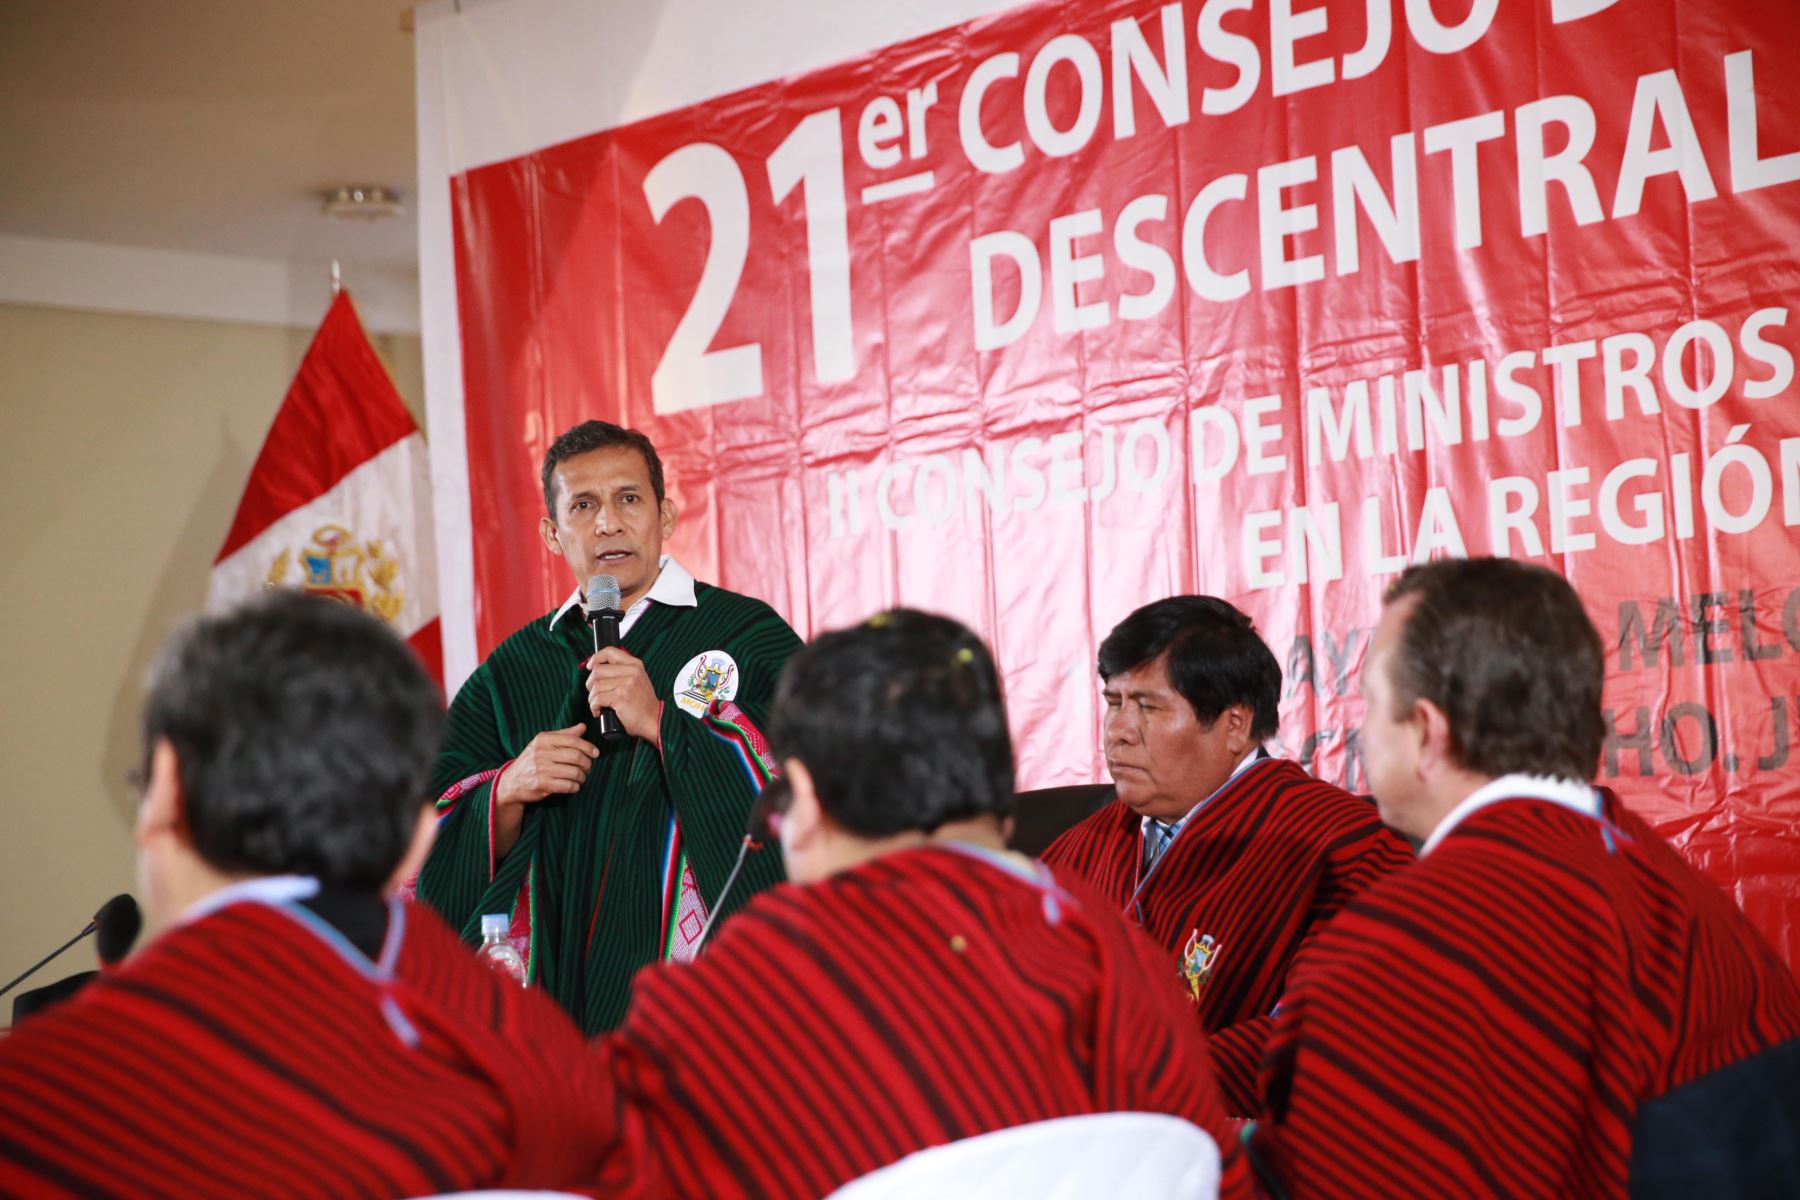 Apertura del 21° Consejo de Ministros Descentralizado en la provincia de Moho (región Puno) con participación del presidente Ollanta Humala. ANDINA/Prensa Presidencia